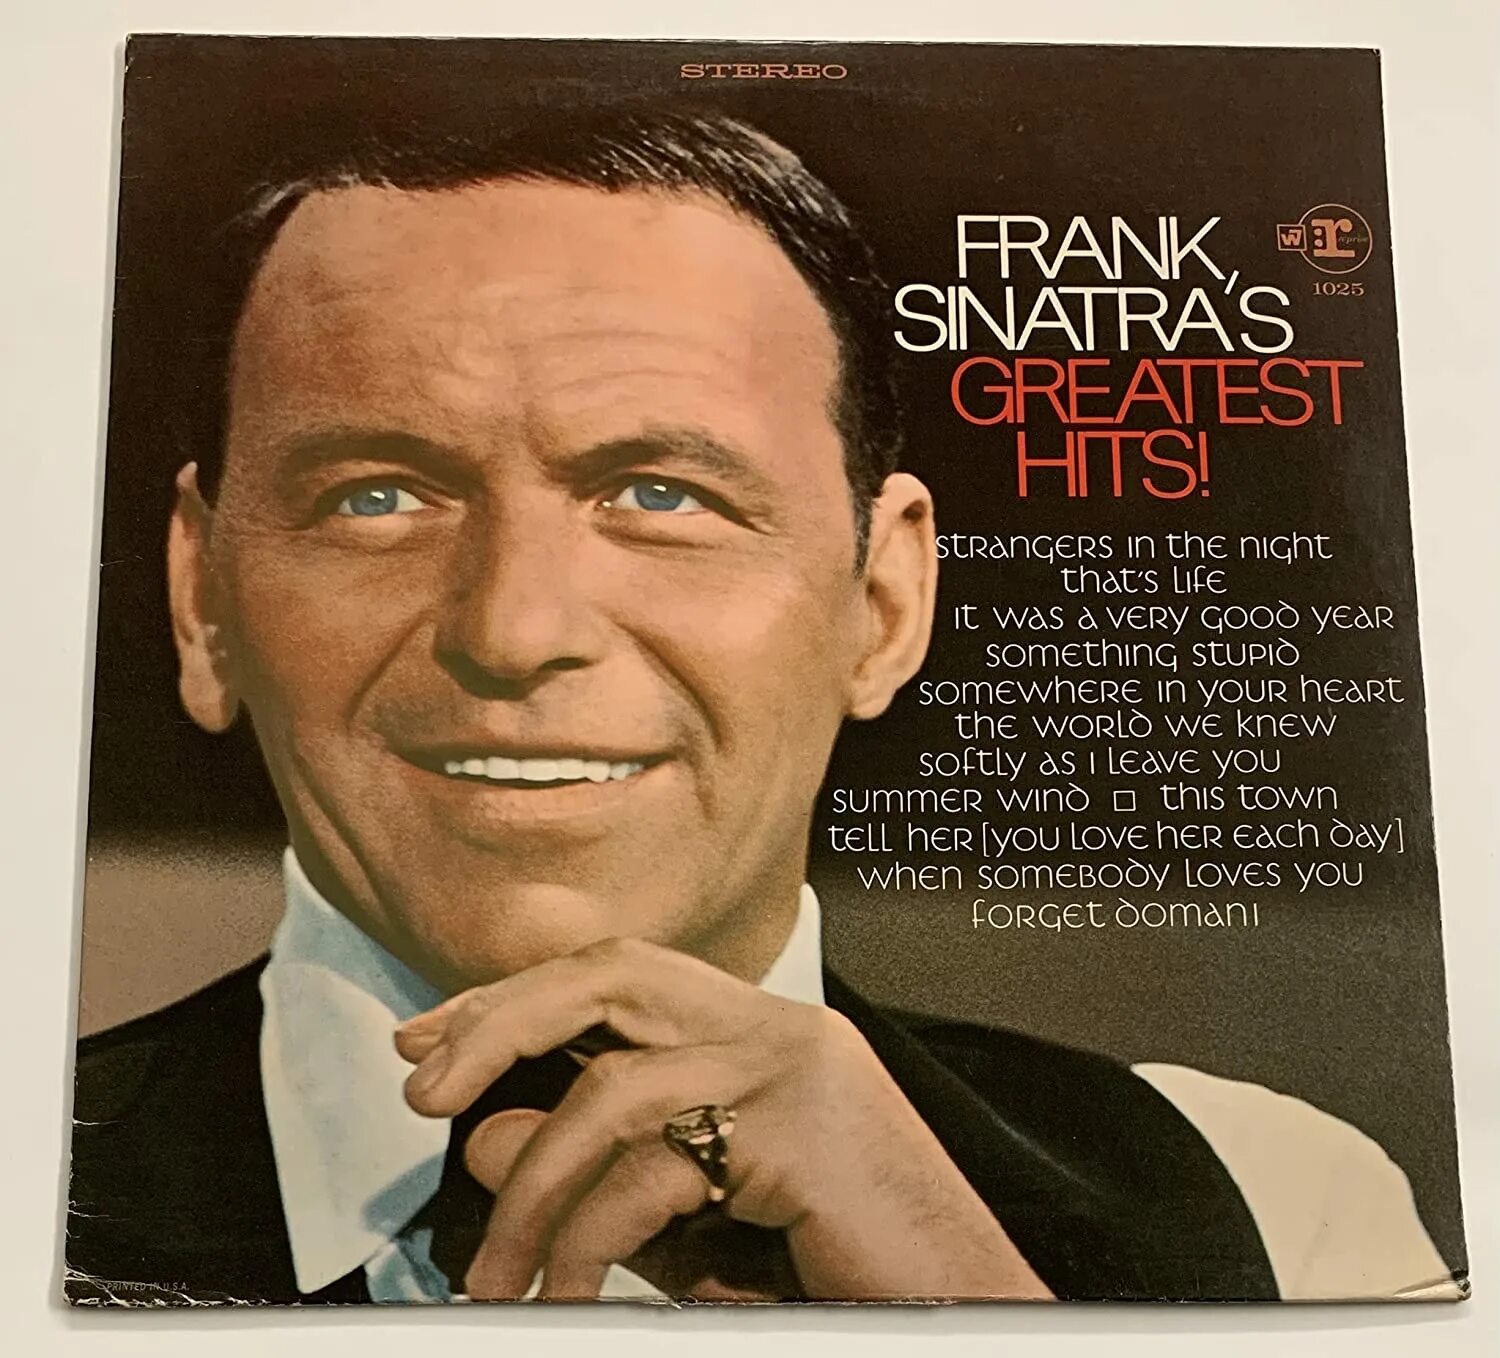 Песня фрэнка синатры на русском языке. Frank Sinatra Greatest Hits пластинка. Frank Sinatra 1990. Часы Frank Sinatra. Фрэнк Синатра песни.